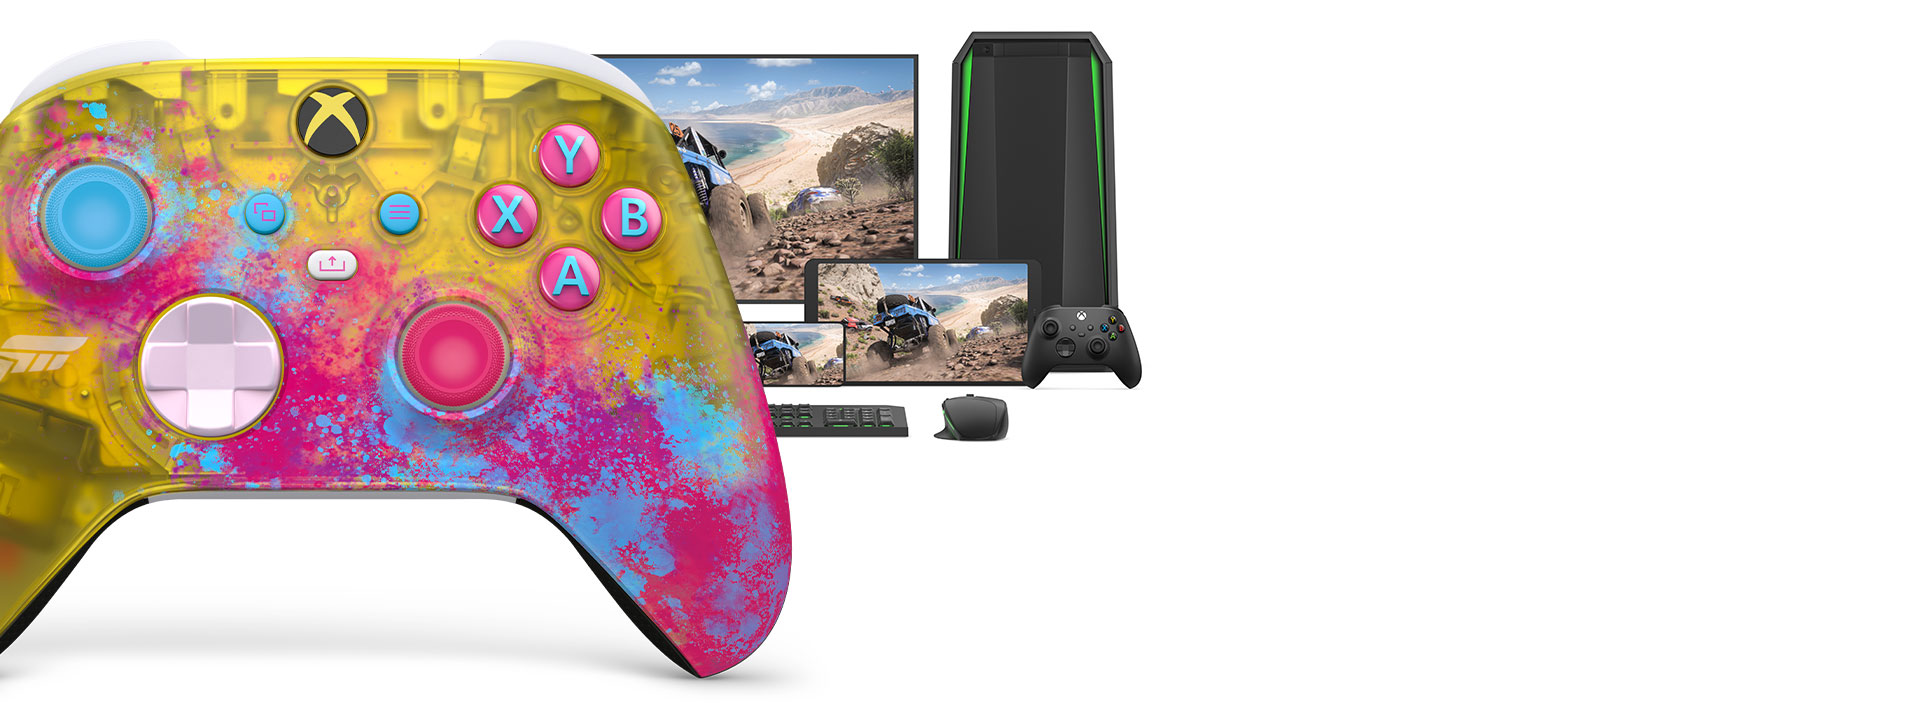 Bezdrôtový ovládač Xbox Forza Horizon 5 s počítačom, televízorom a konzolou Xbox Series S